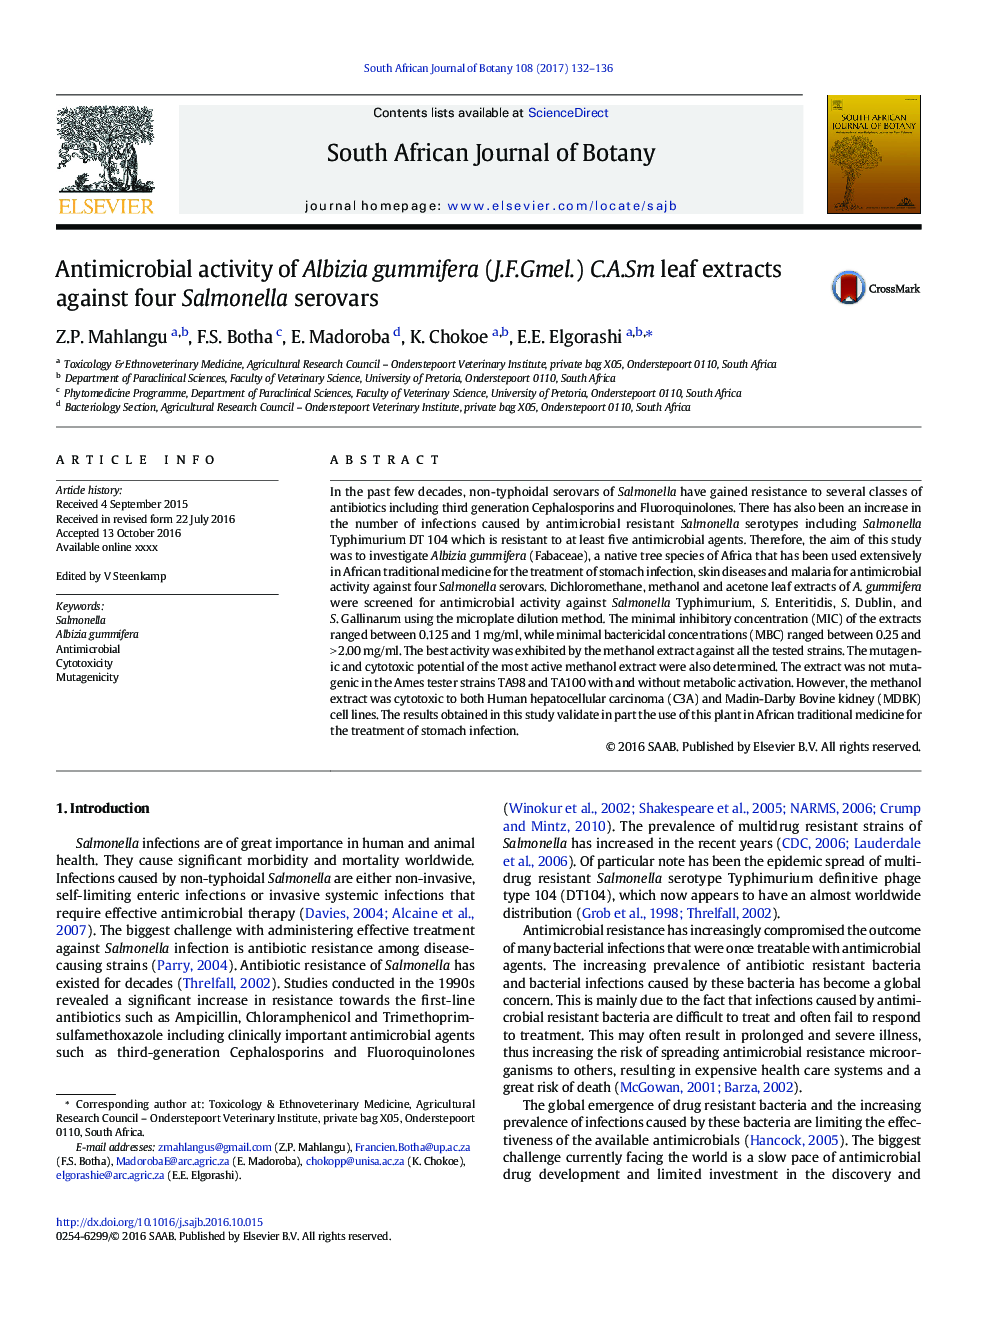 فعالیت ضدمیکروبی عصاره برگ (J.F.Gmel.) C.A.Sm gummifera البیزیا در مقابل چهار سرووار سالمونلا